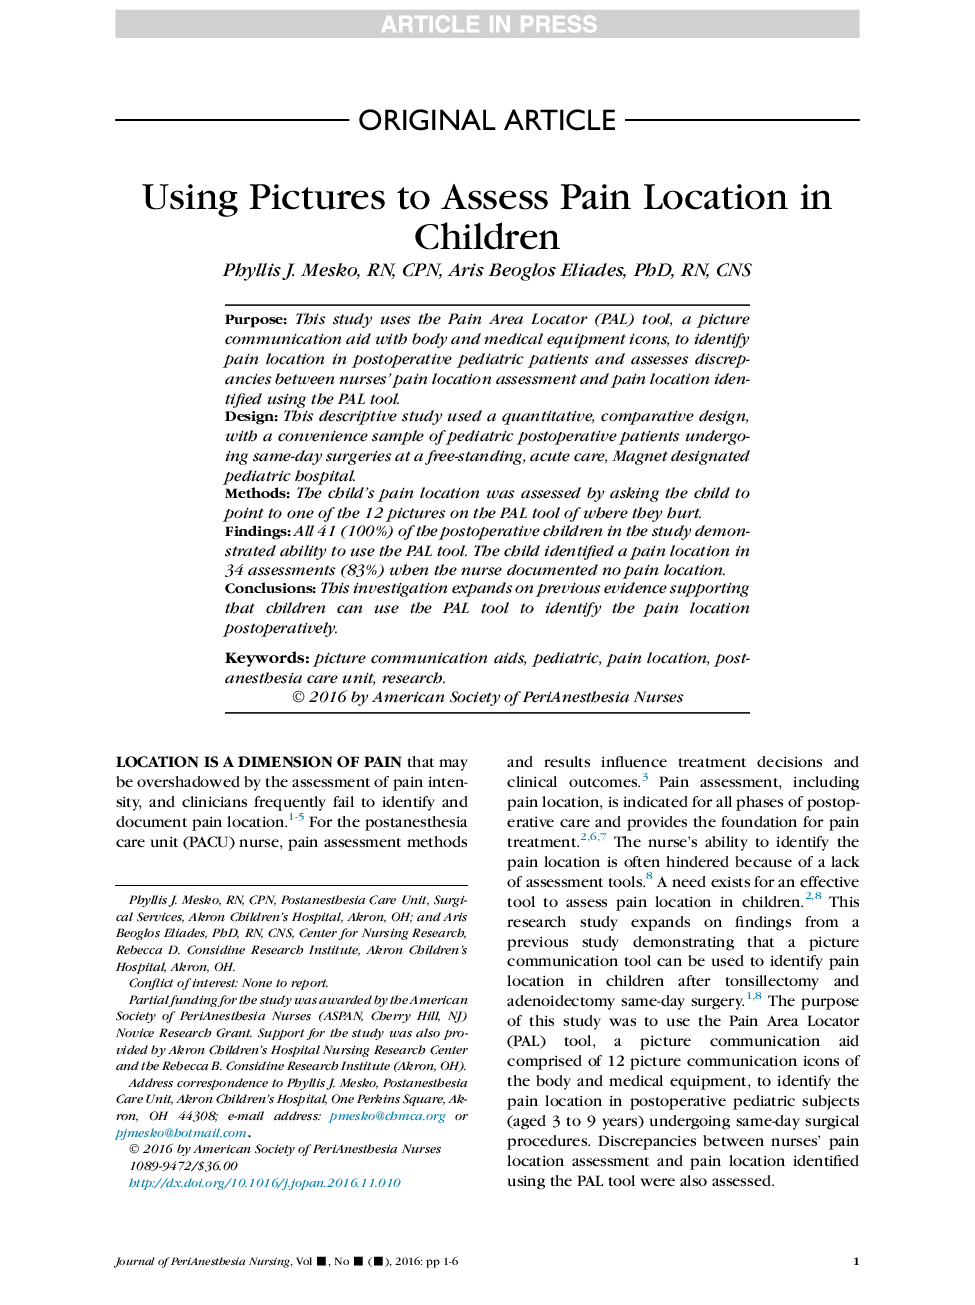 استفاده از تصاویر برای ارزیابی موقعیت درد در کودکان 